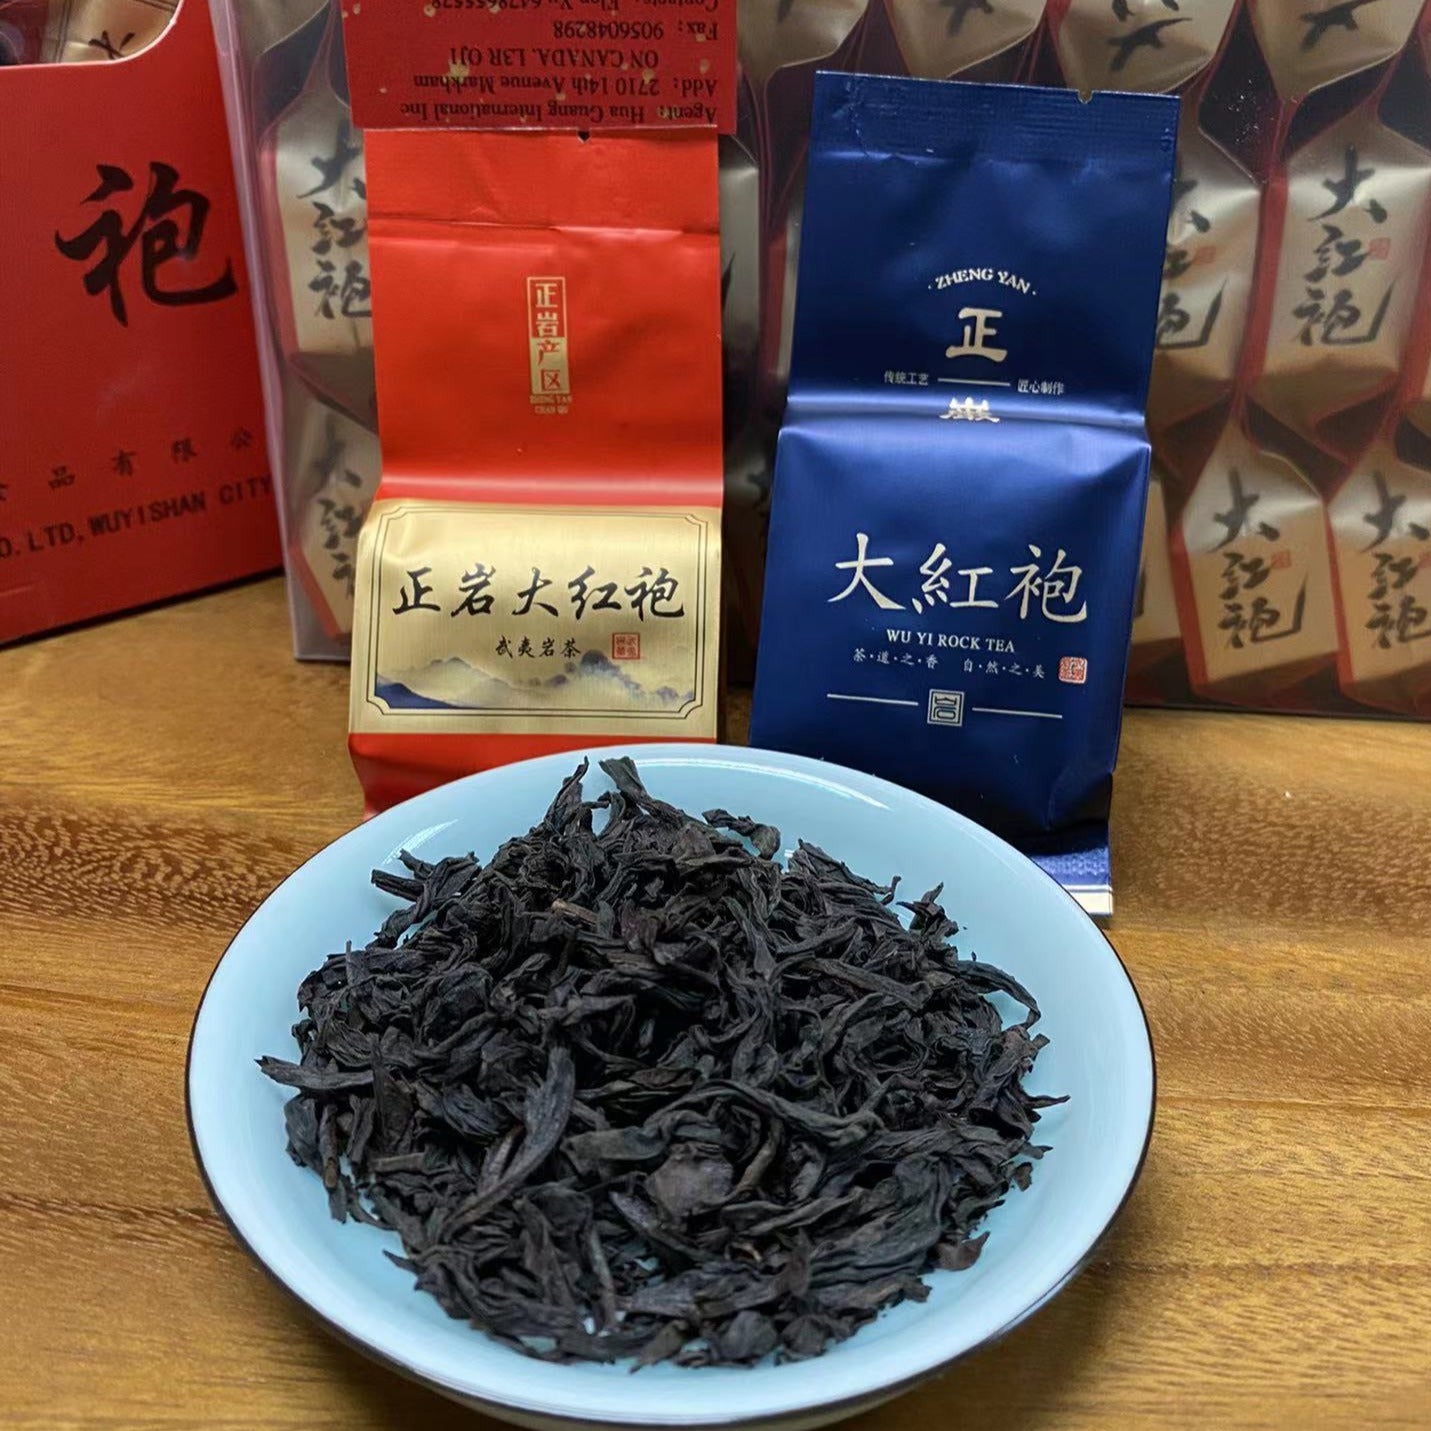 【鹰美华】大红袍茶叶 1盒30包